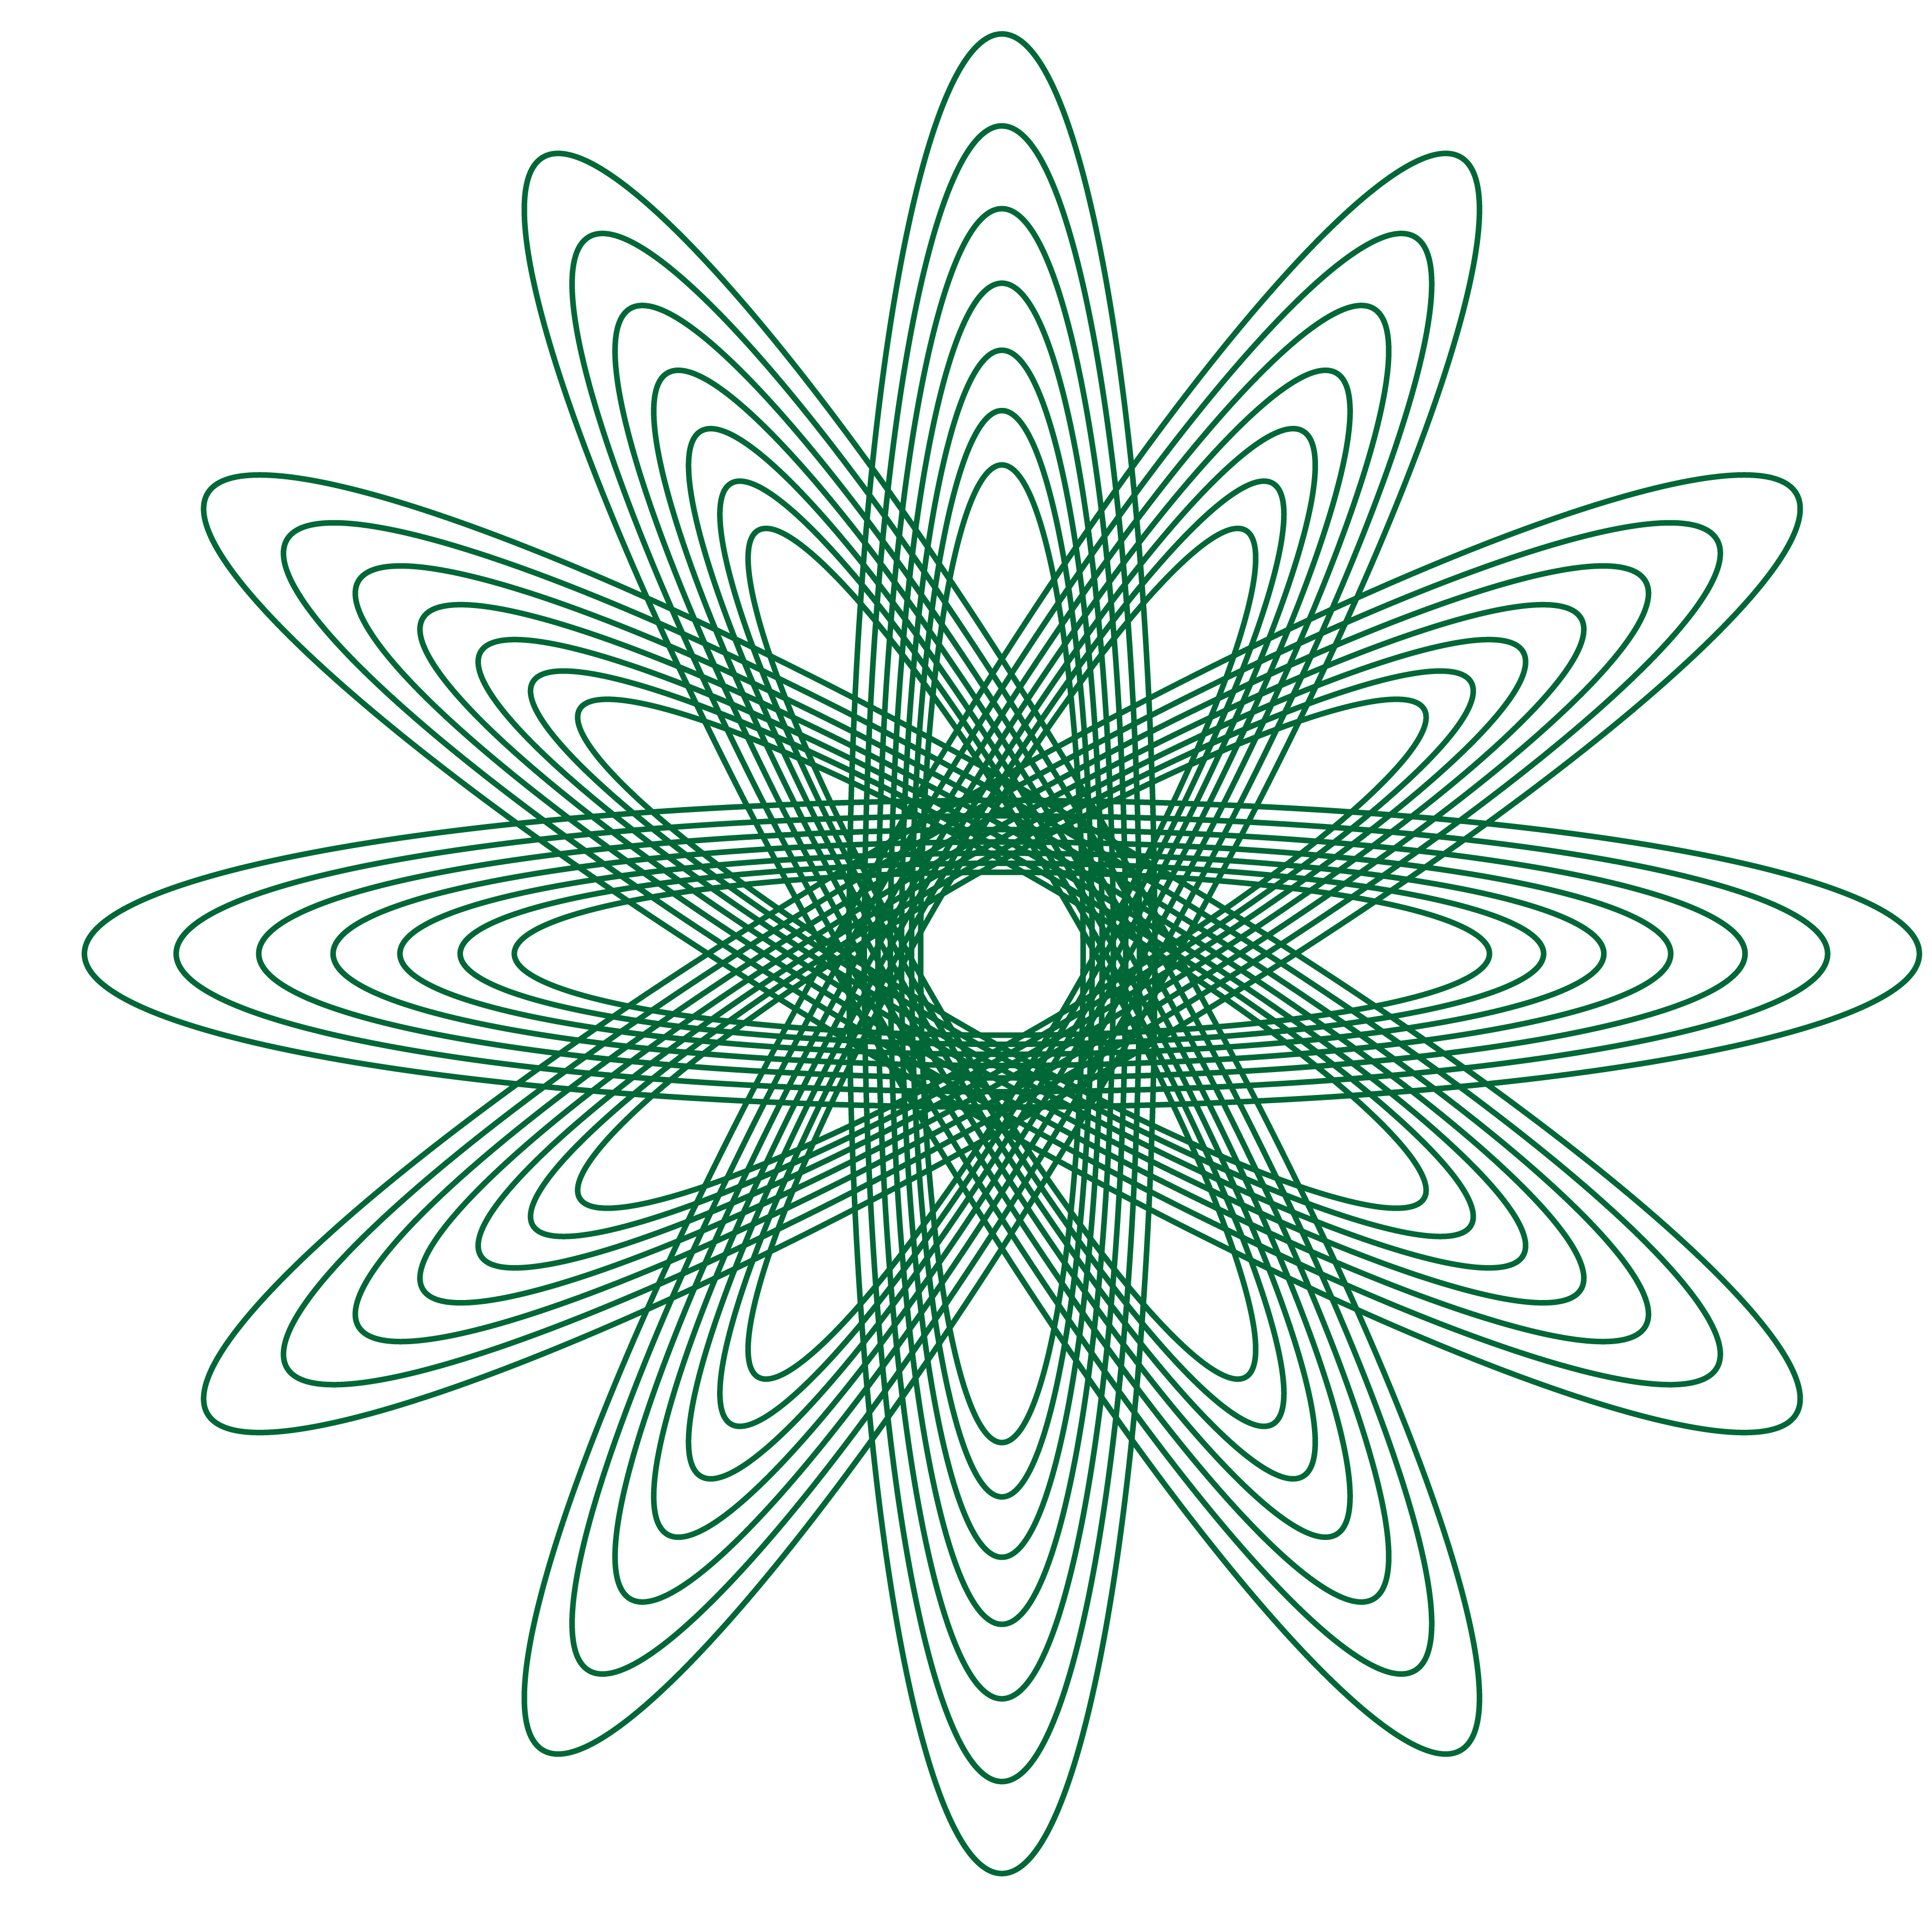 Spirograph pattern circle design green drawing free image